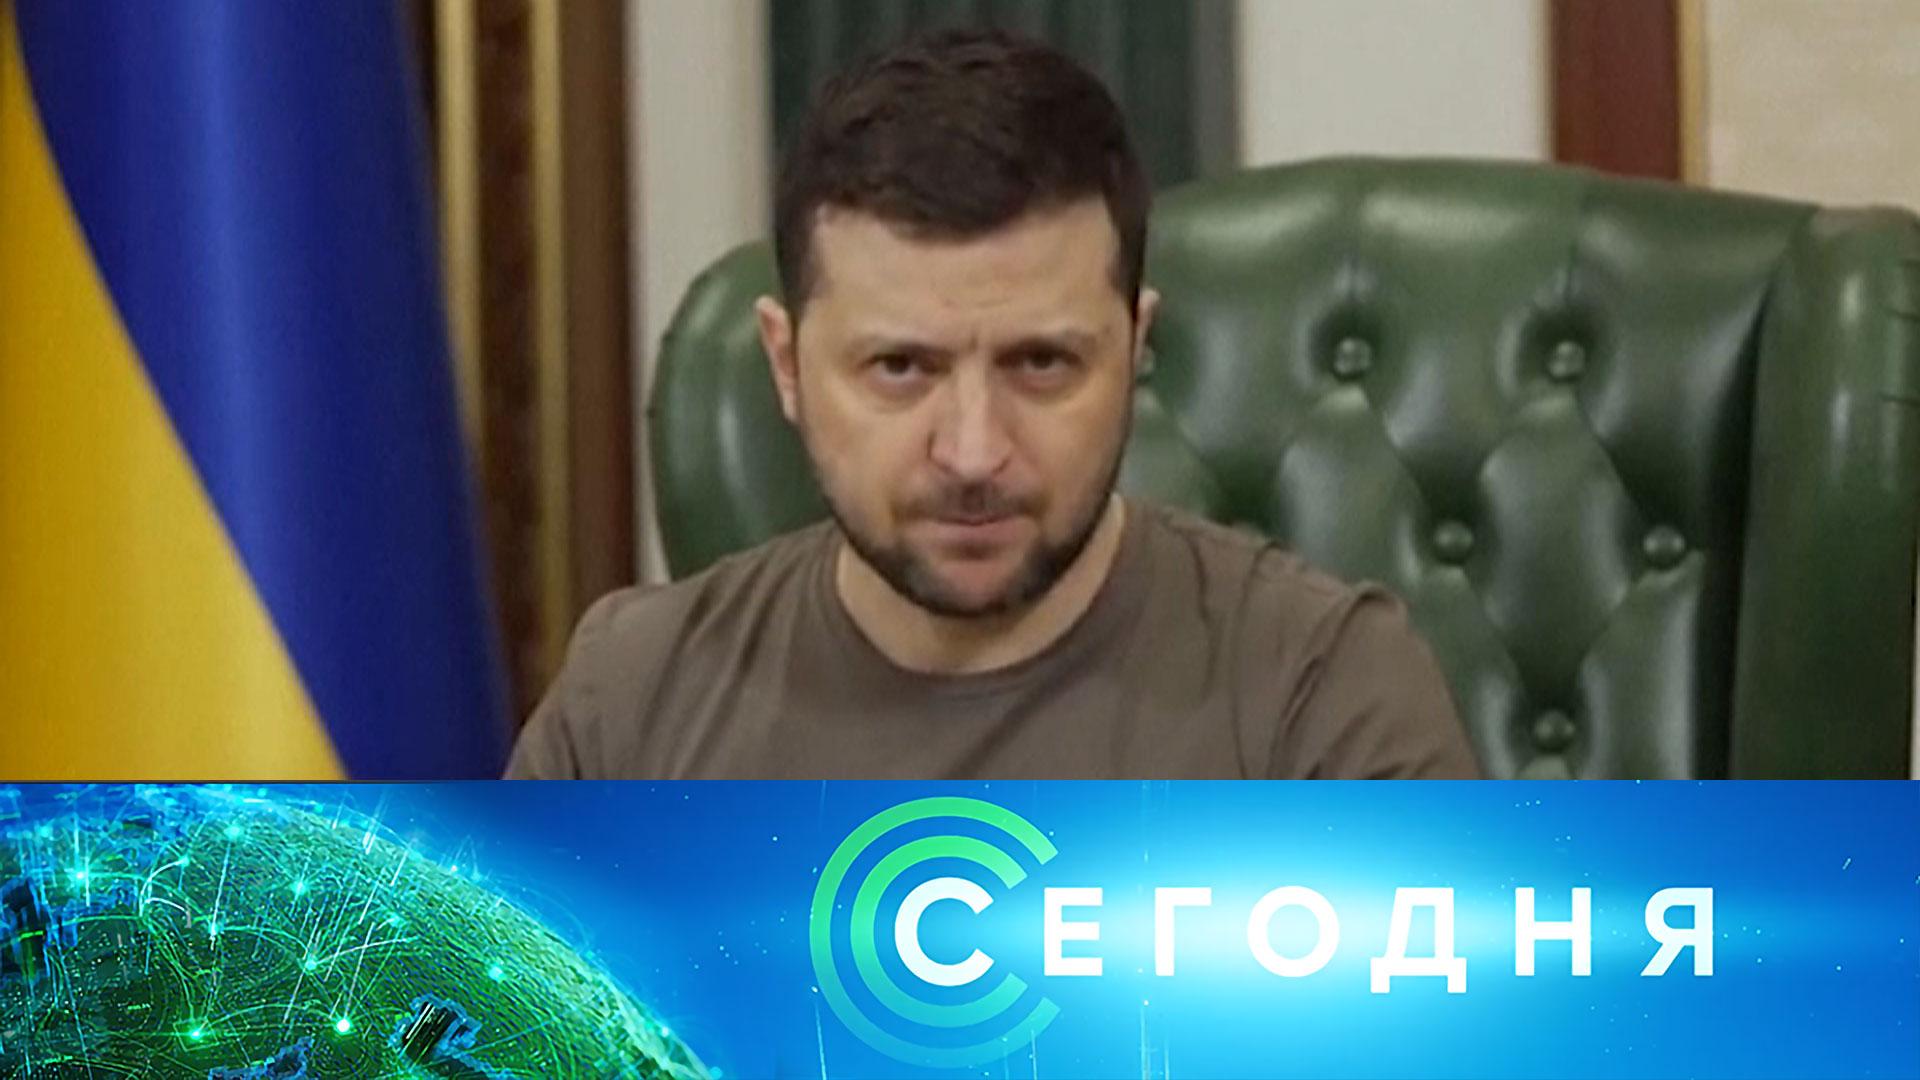 Первый канал про украину